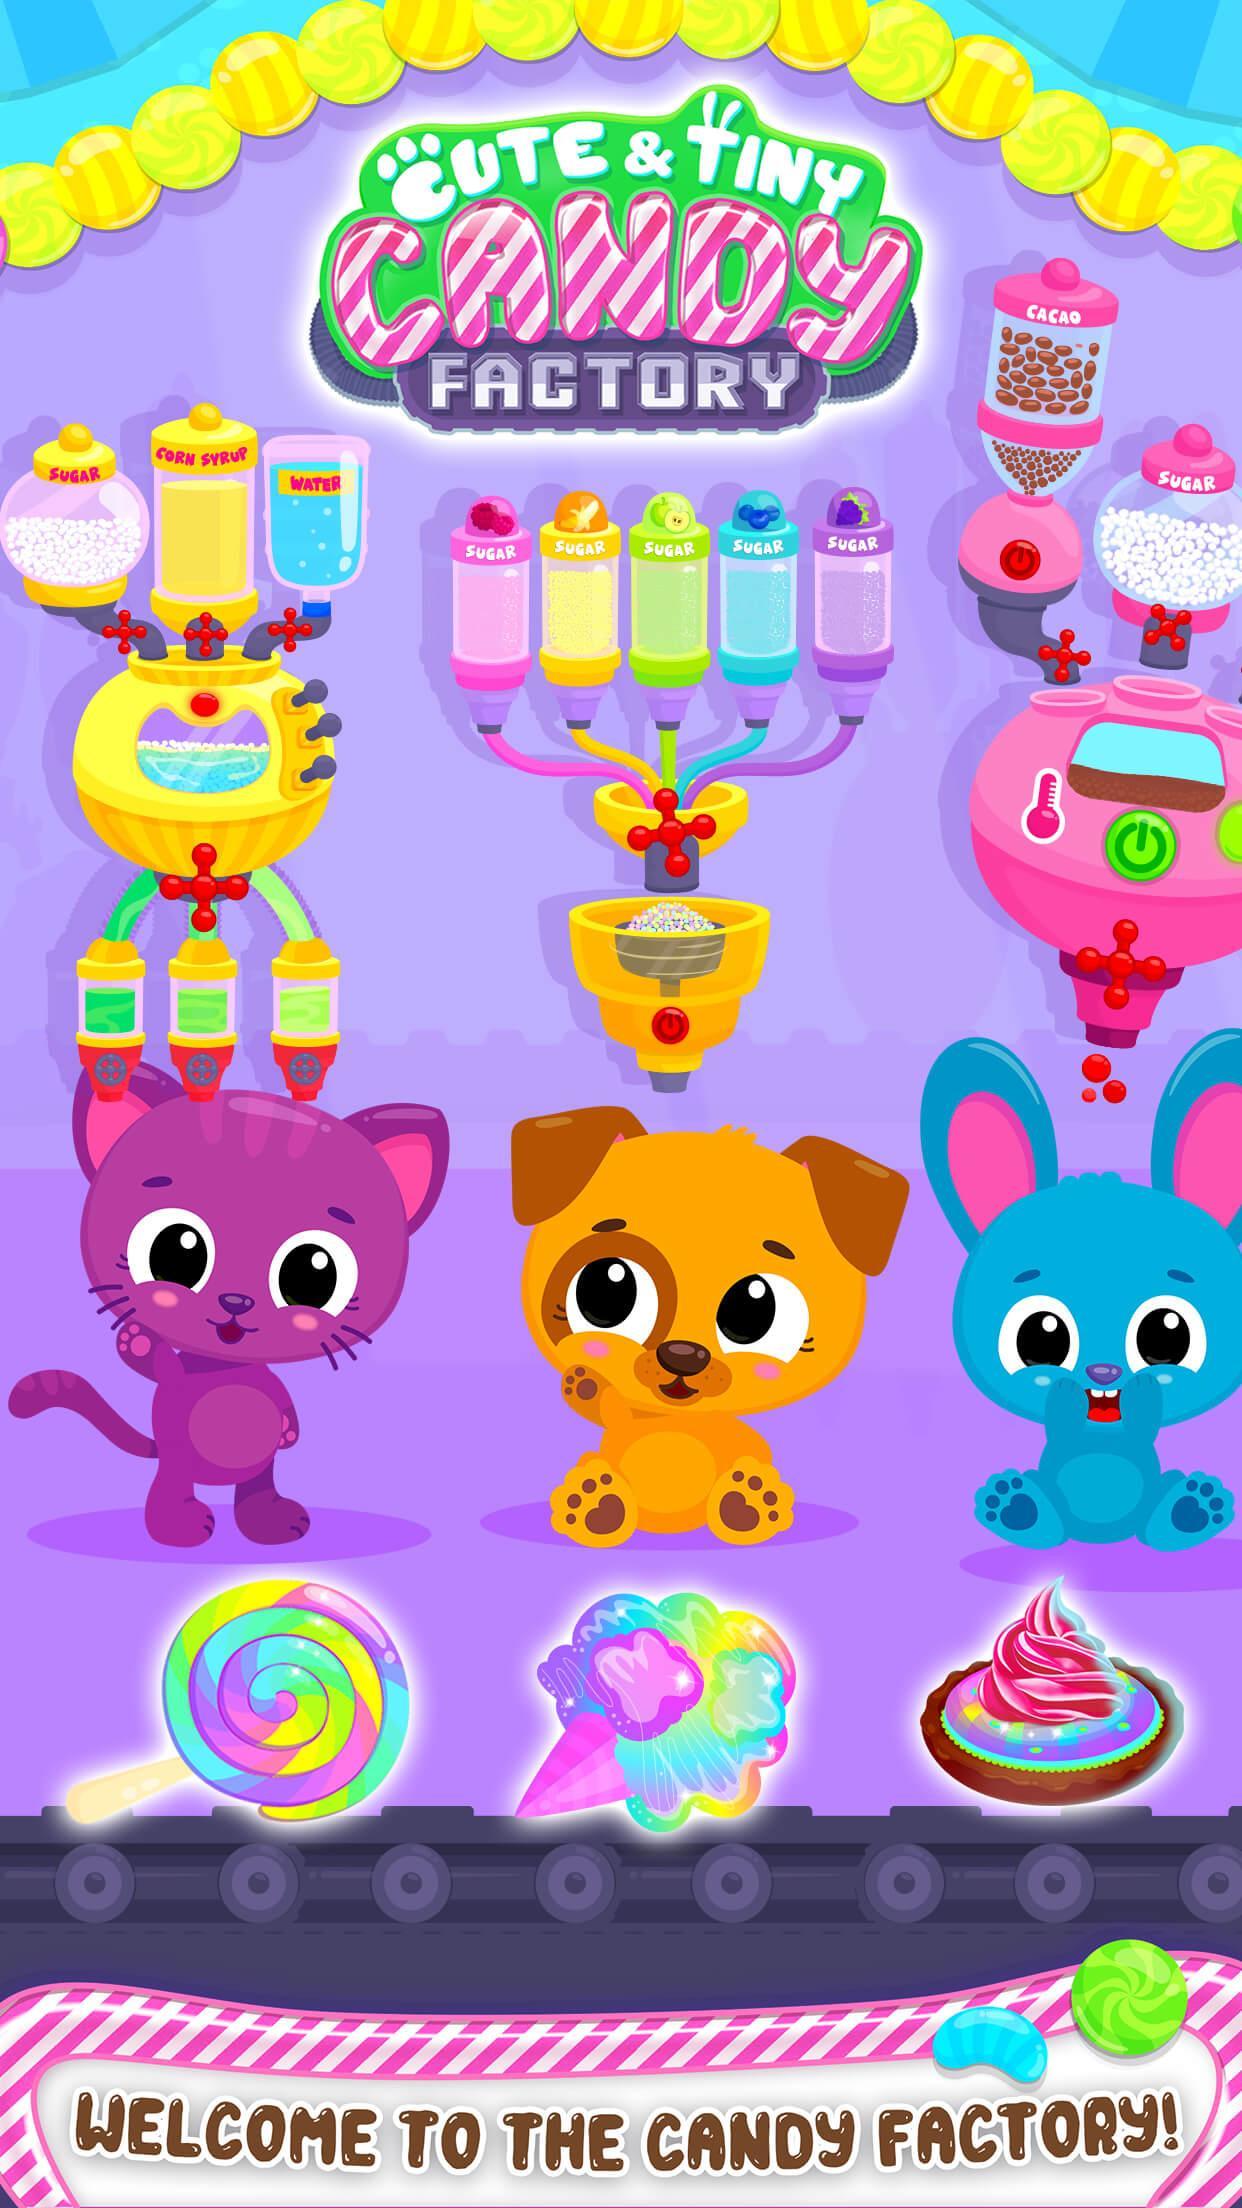 Cute & Tiny Candy Factory - Sweet Dessert Makerのキャプチャ